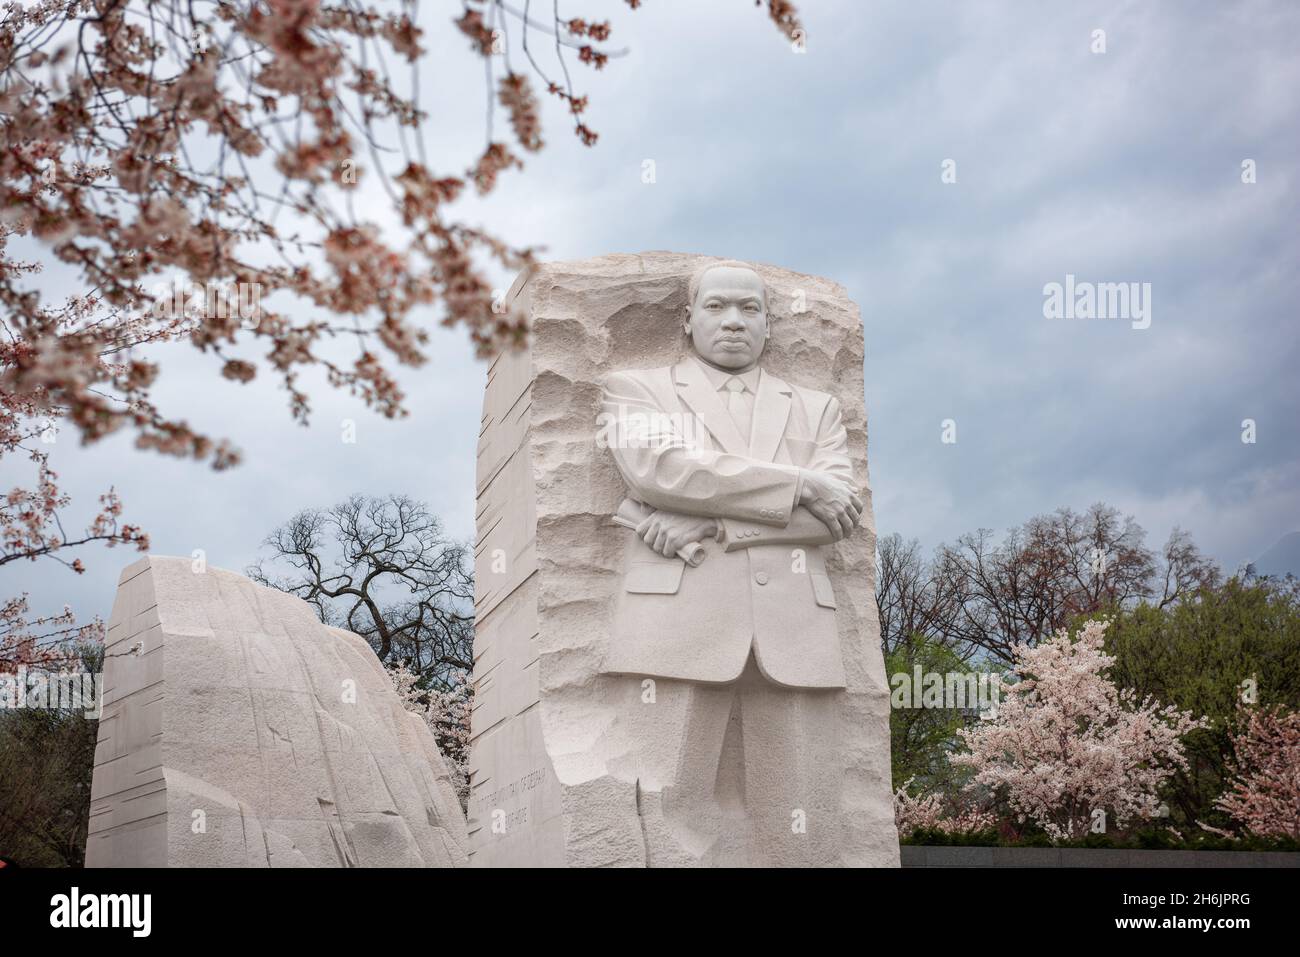 Washington - 12 AVRIL 2015 : le mémorial du leader des droits civiques Martin Luther King Jr. Au cours de la saison de printemps dans le parc de West Potomac. Banque D'Images